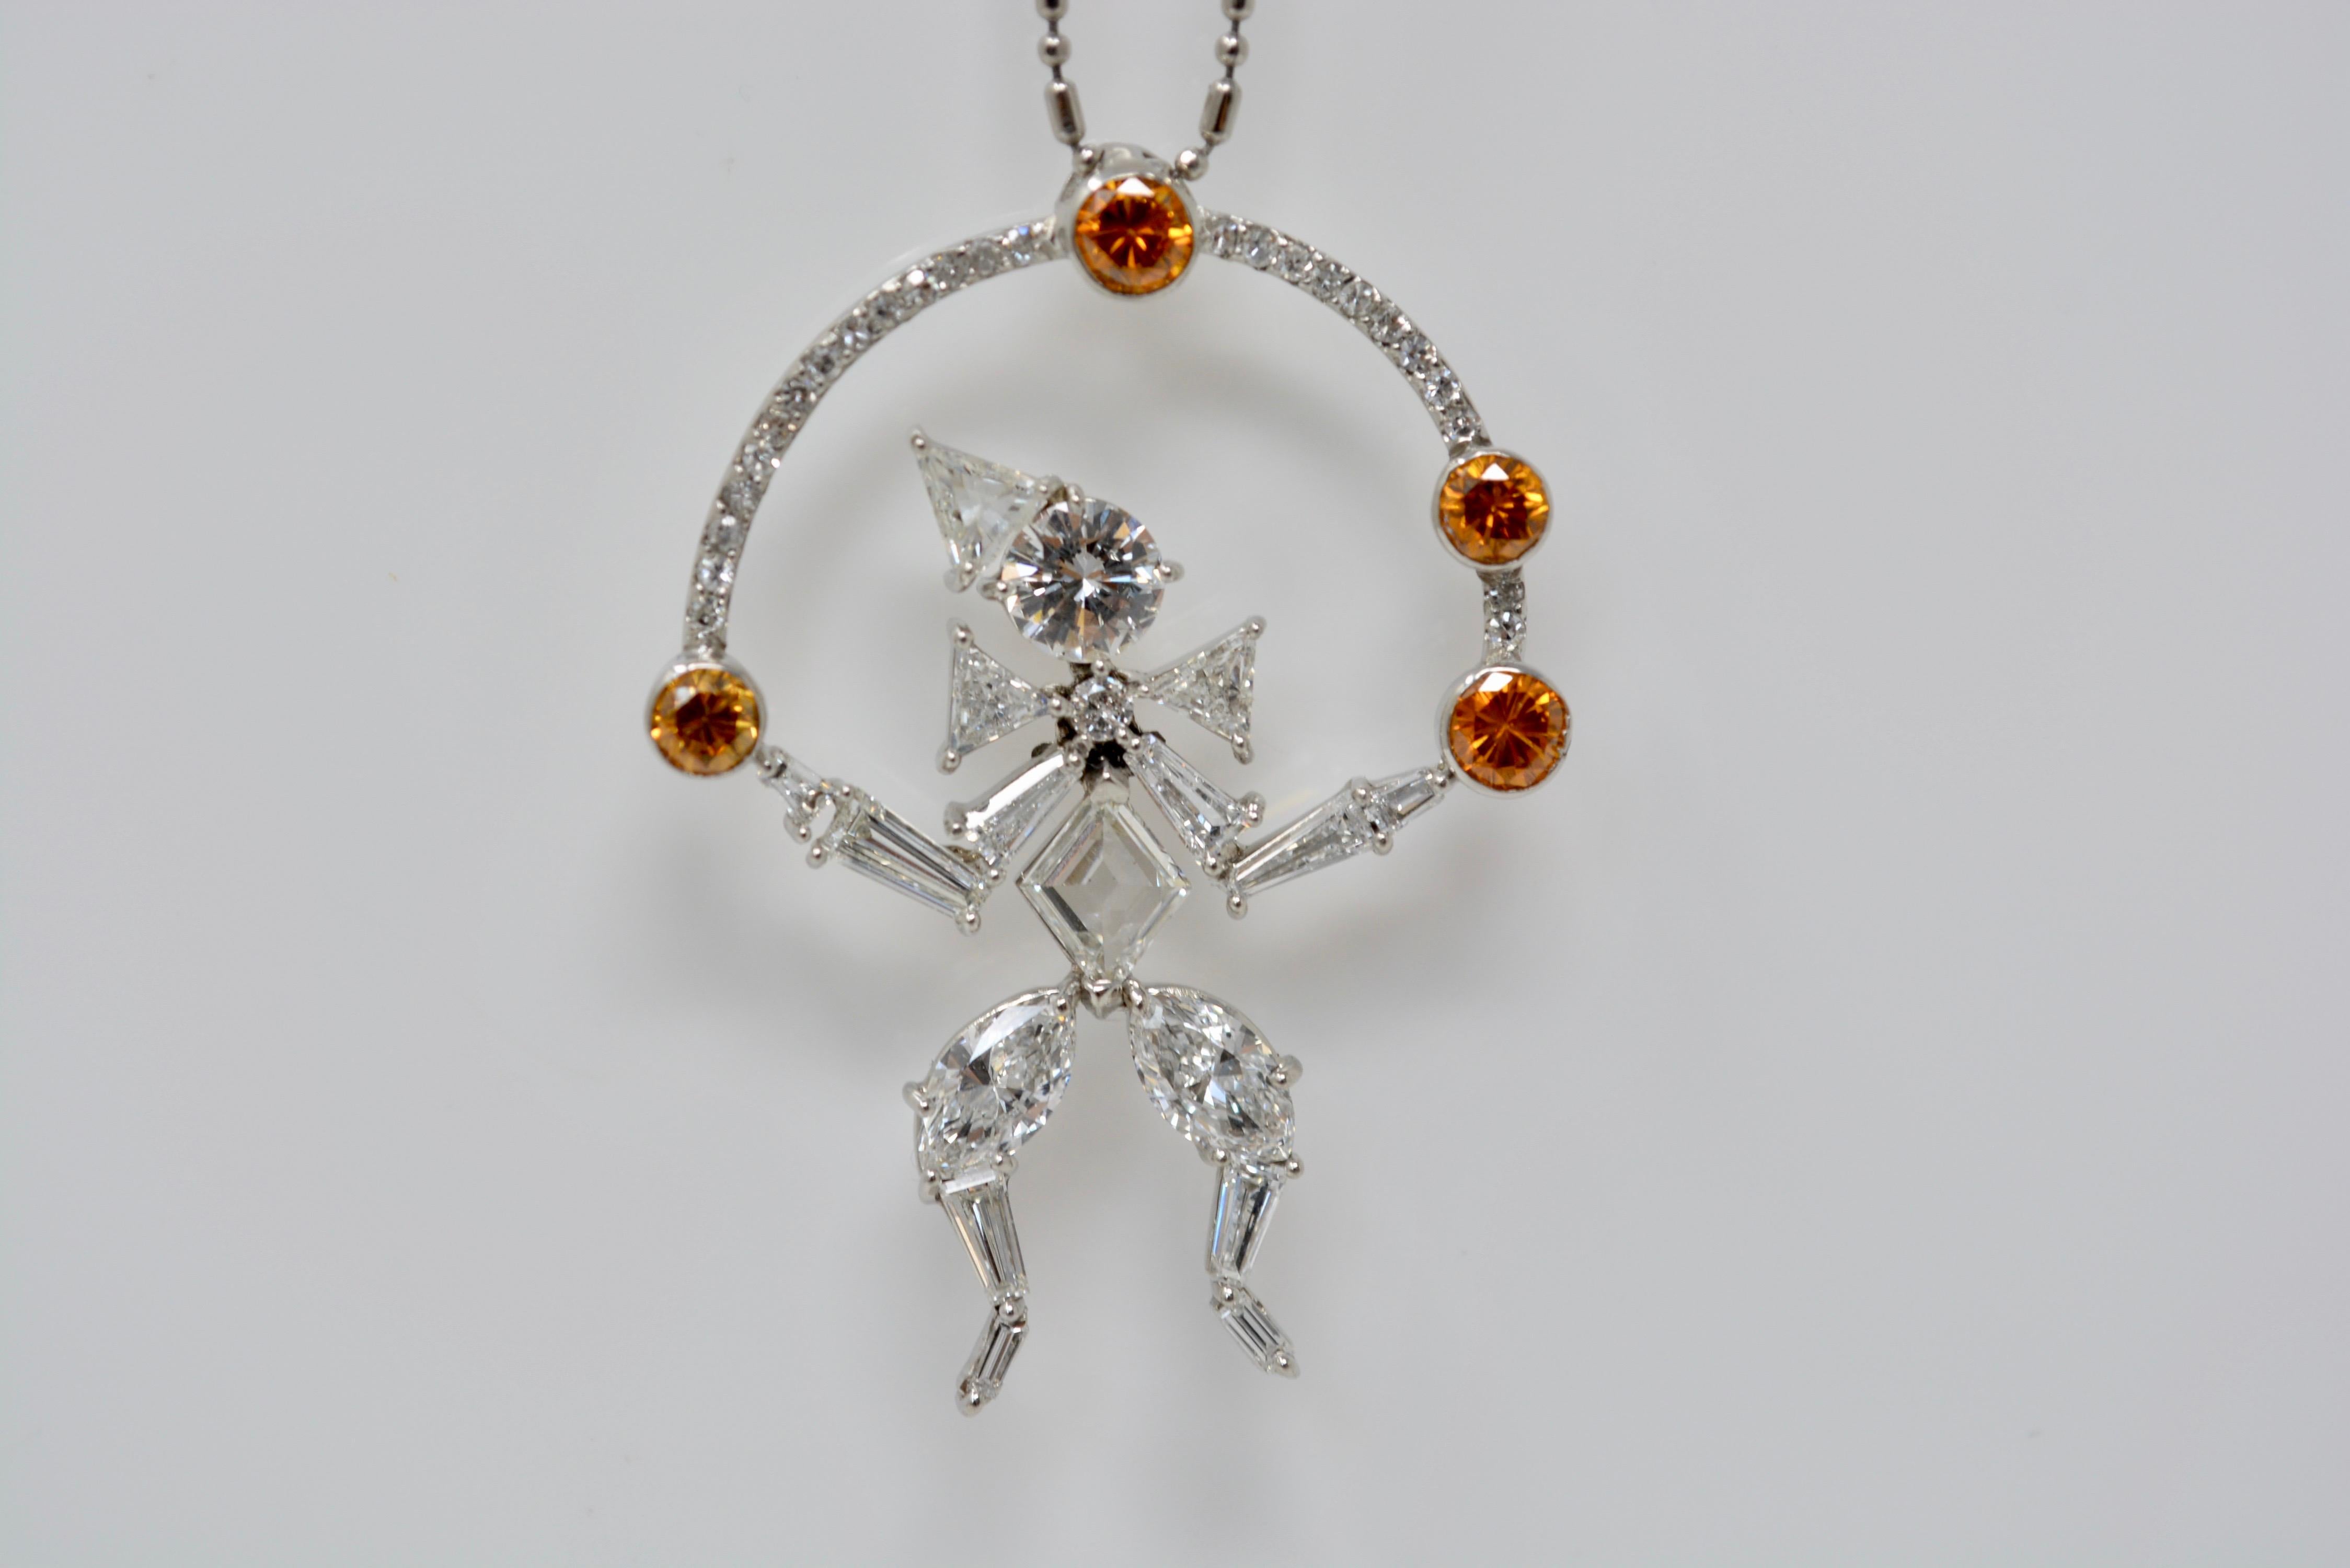 Doté d'un pendentif incroyablement attrayant, magnifiquement serti de diamants bruns et blancs, ce charmant collier de Moguldiam Inc ajoutera une touche de vivacité à votre style. Le collier est fabriqué à la main en platine avec des diamants bruns